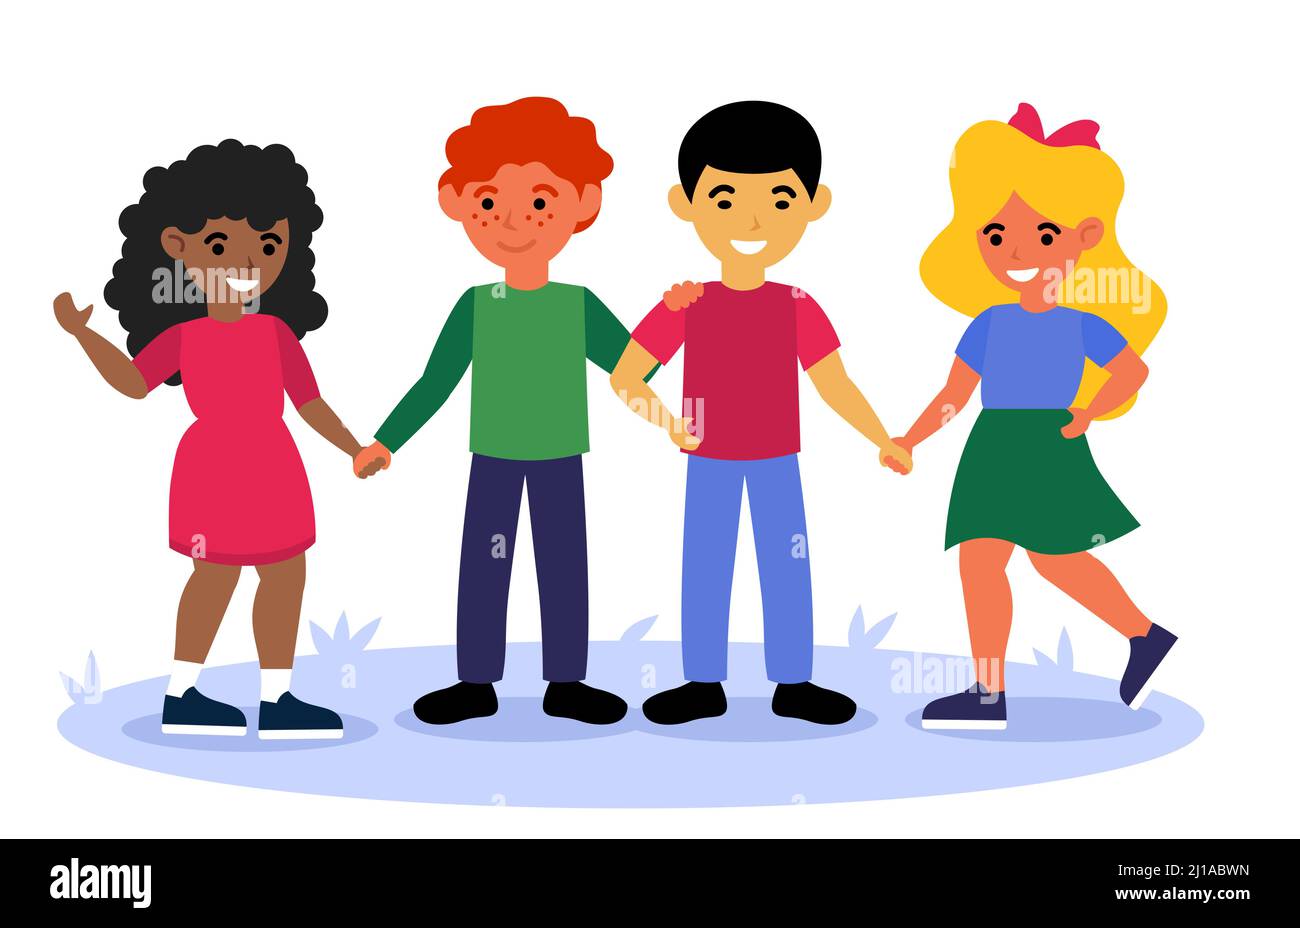 Multikulturelle Kinder stehen zusammen und halten Hände flach Vektor-Illustration. Cartoon lächelnd verschiedene Klassenkameraden aus der internationalen Schule grou Stock Vektor